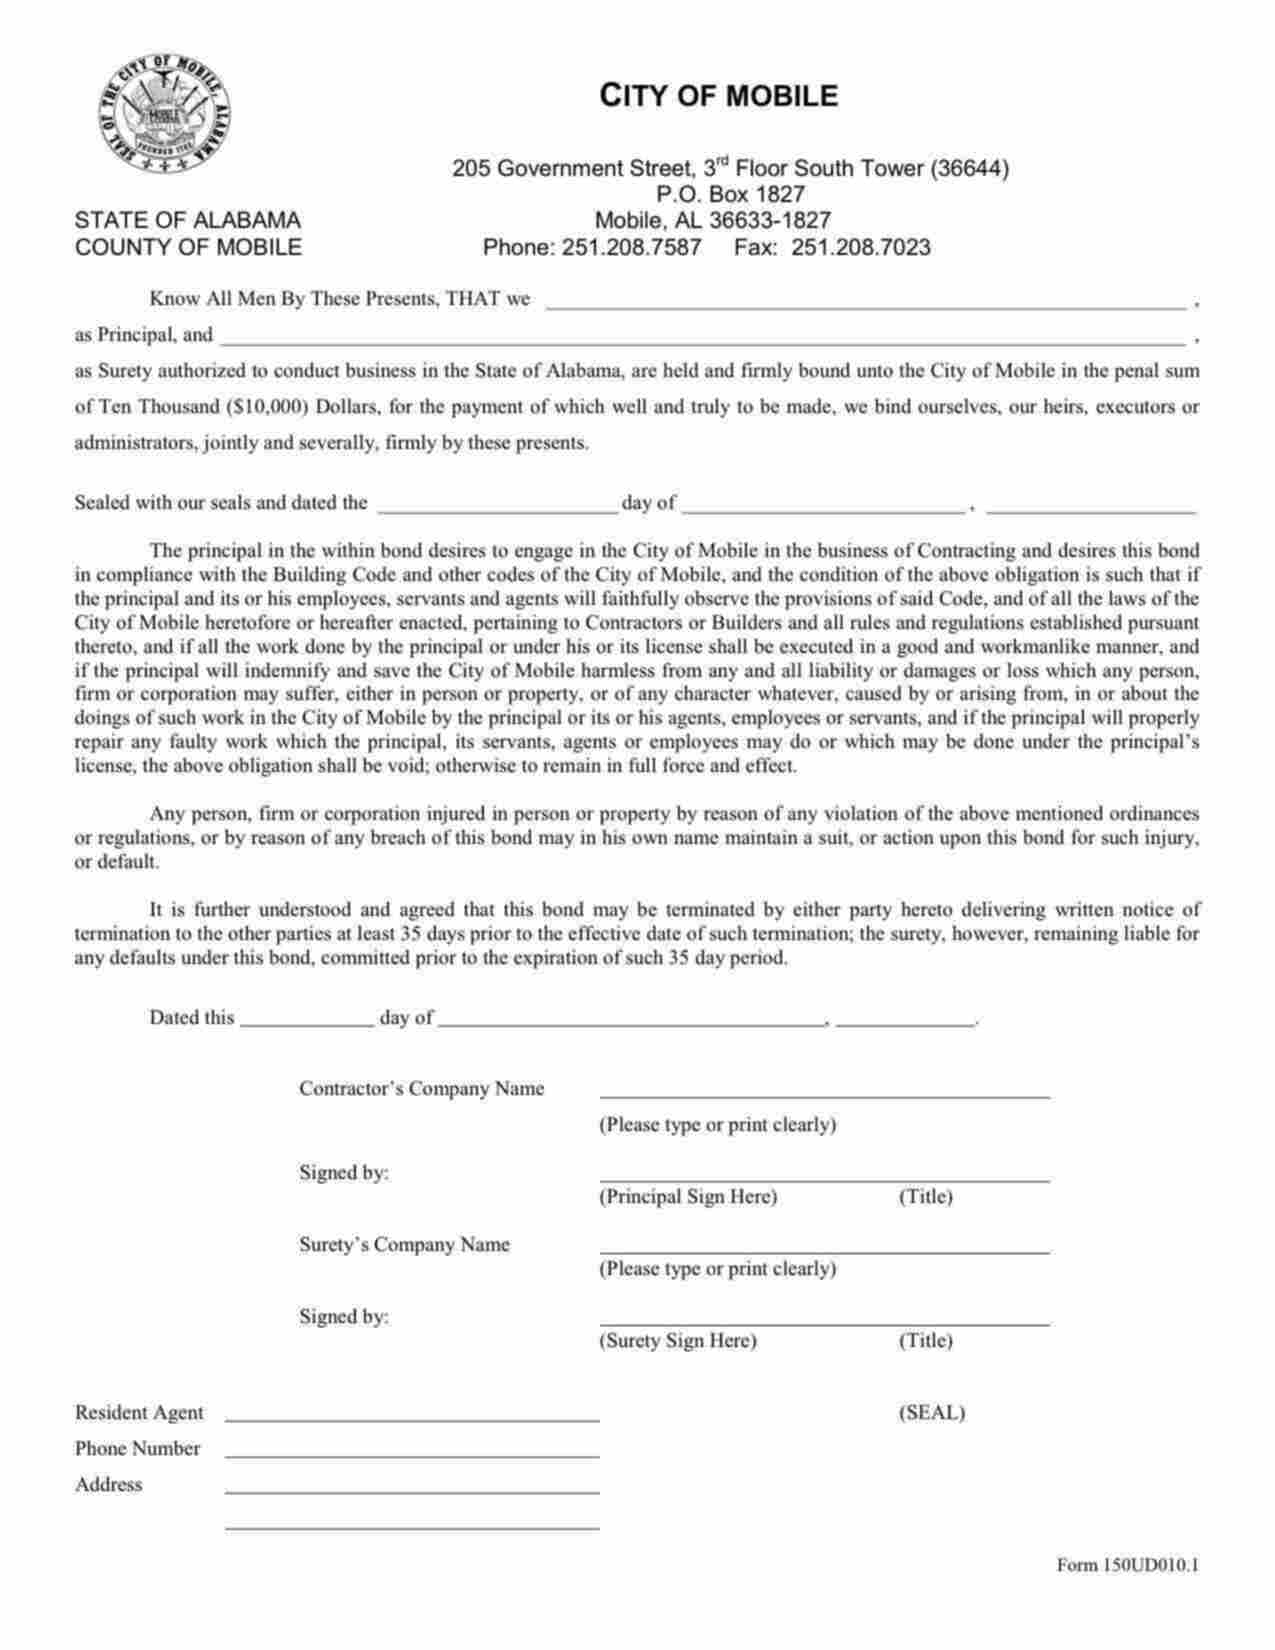 Alabama Contractor's License/Permit Bond Form